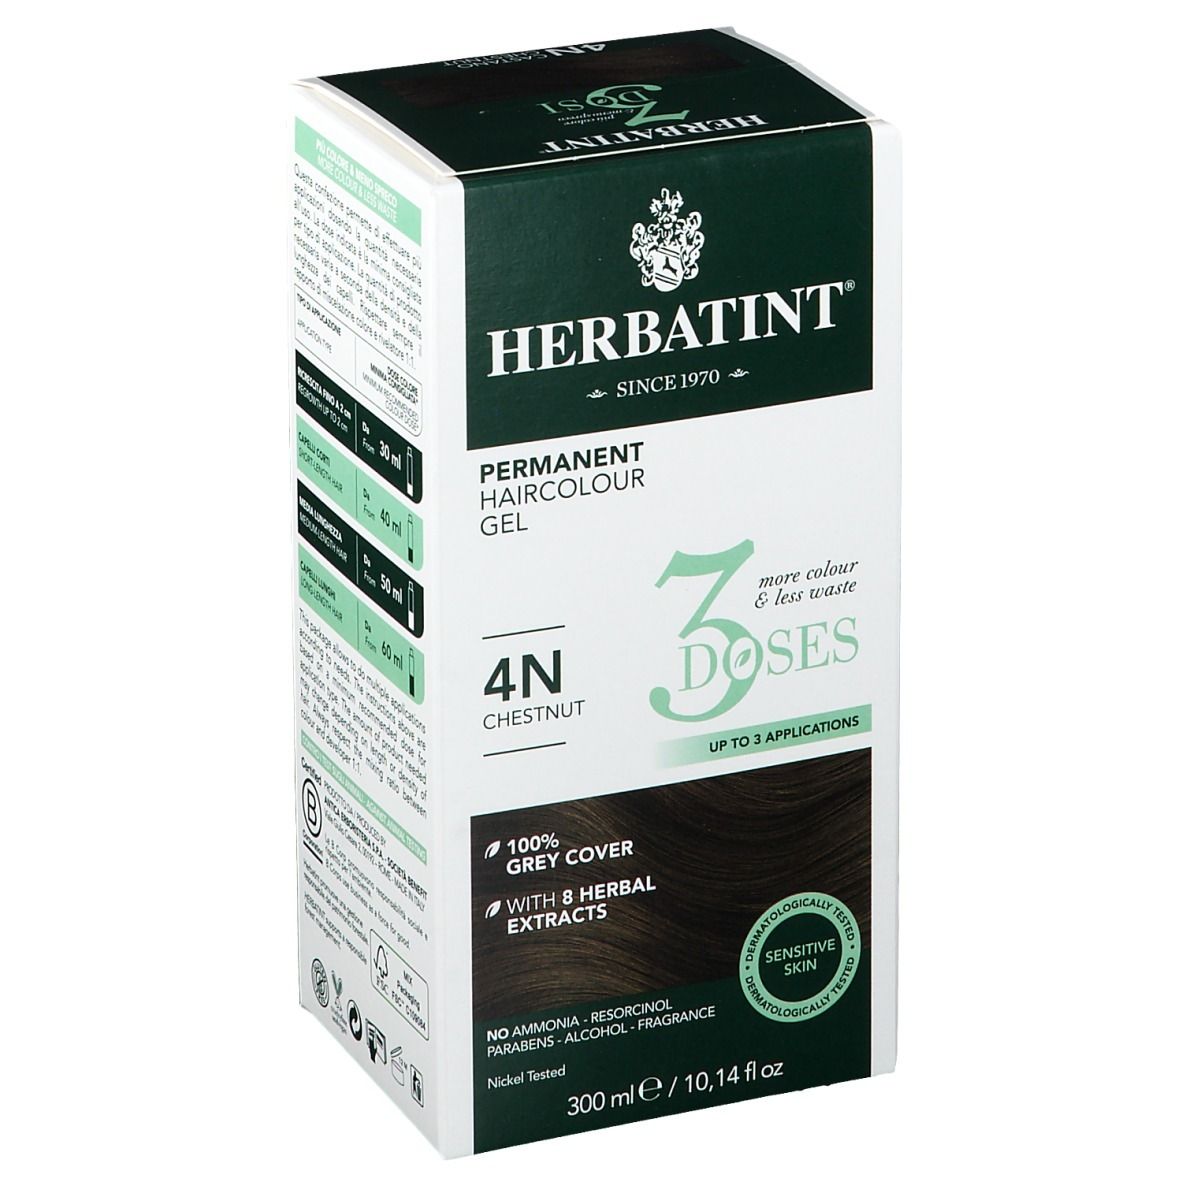 HERBATINT® 3 Dosi 4N Castano